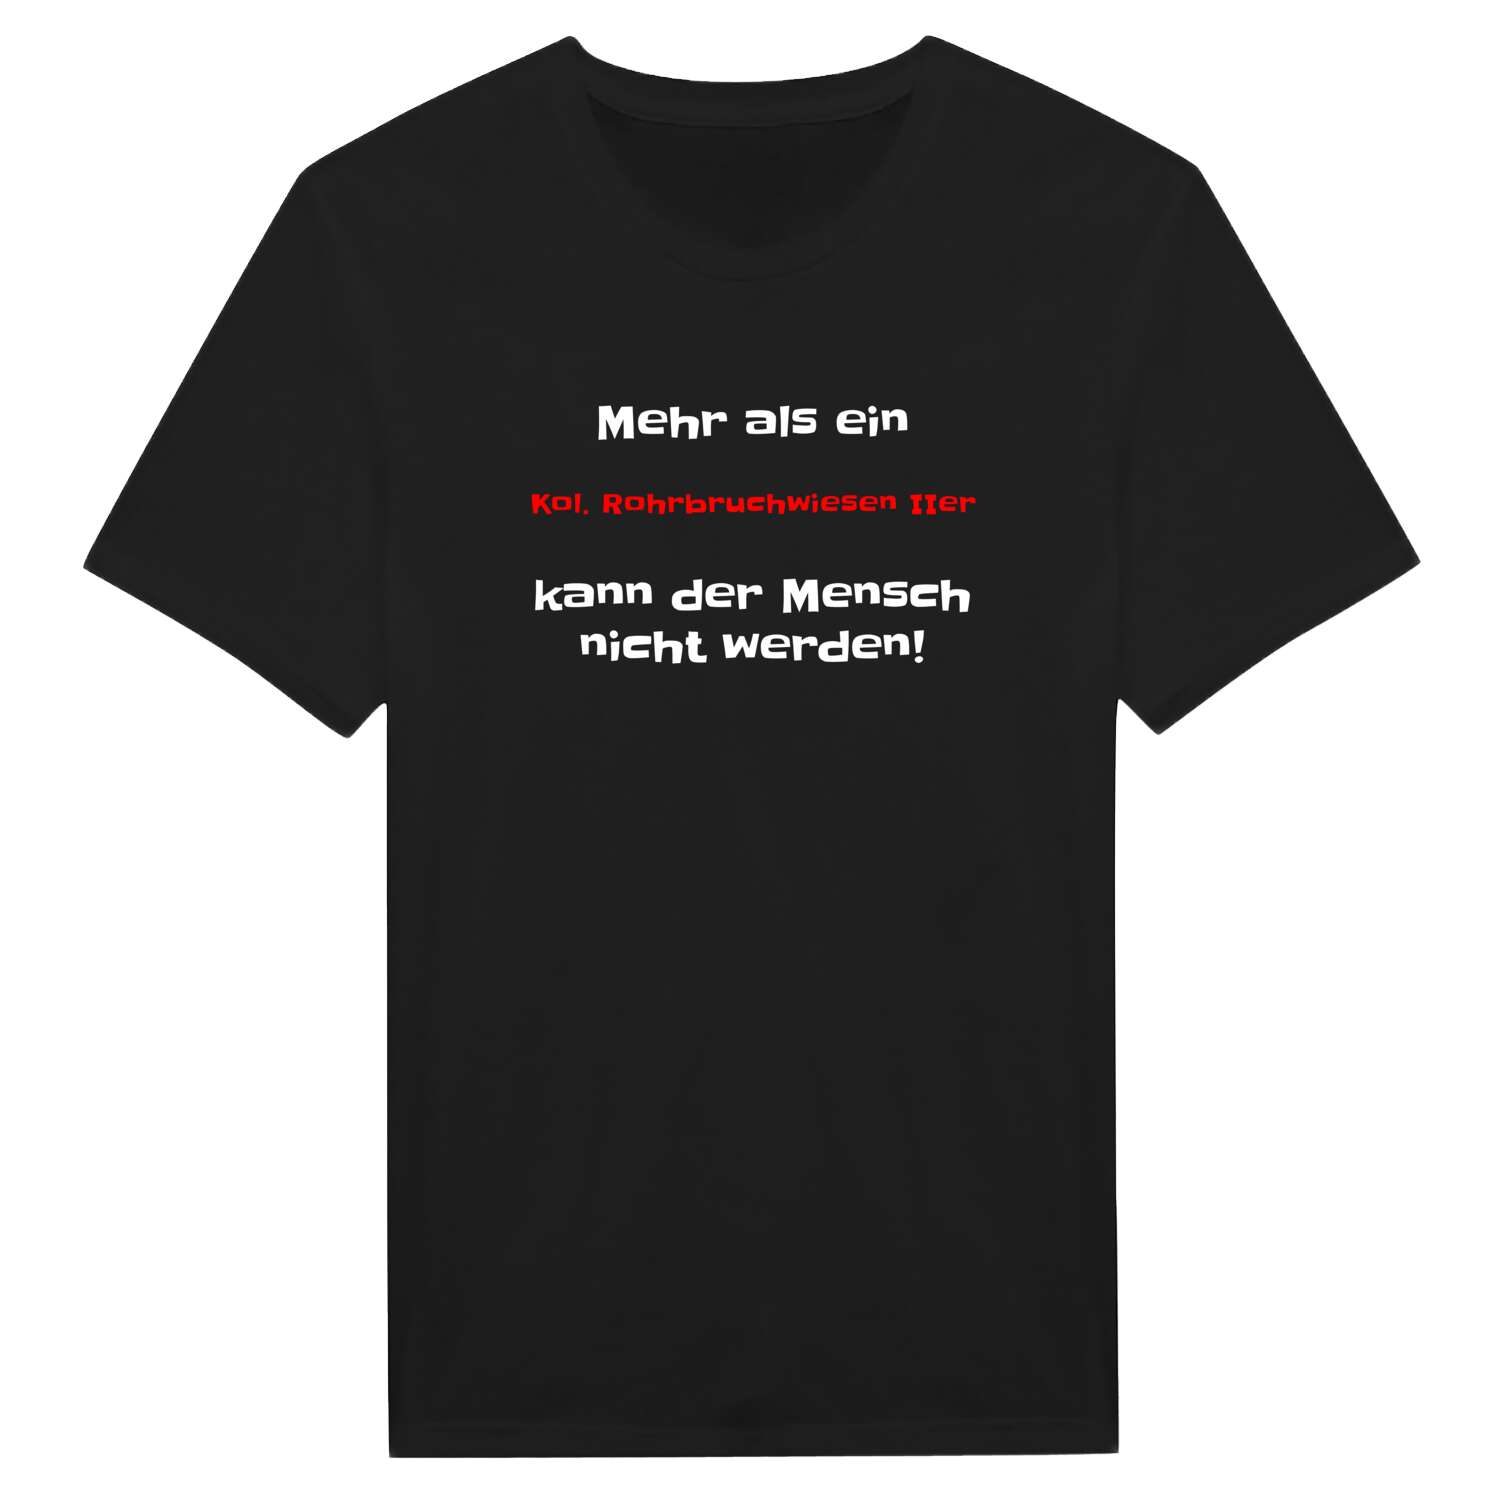 Kol. Rohrbruchwiesen II T-Shirt »Mehr als ein«